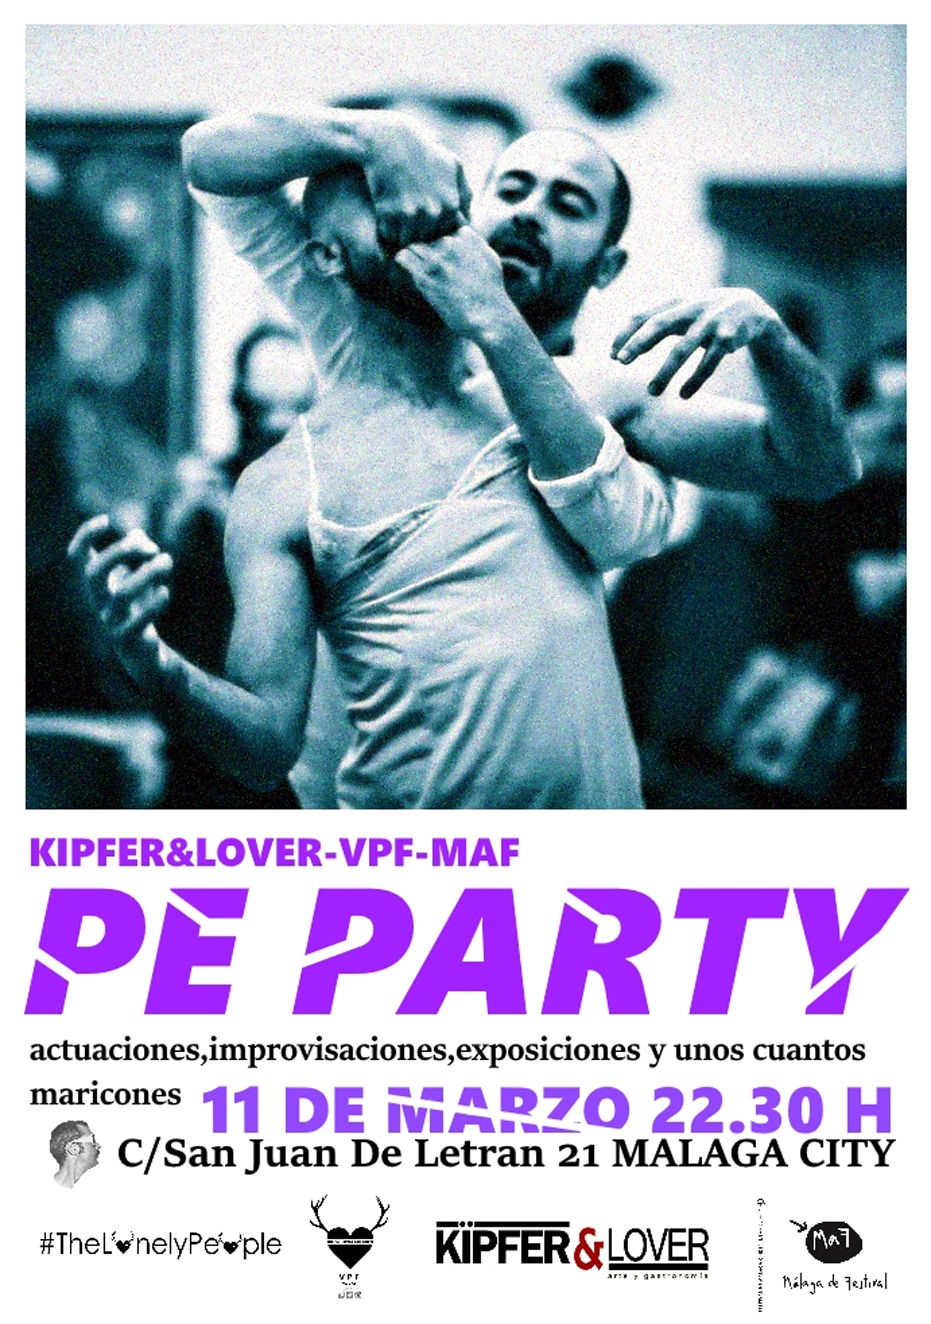 Pe Party, una fiesta promovida por VPF - Kipfer & Lover